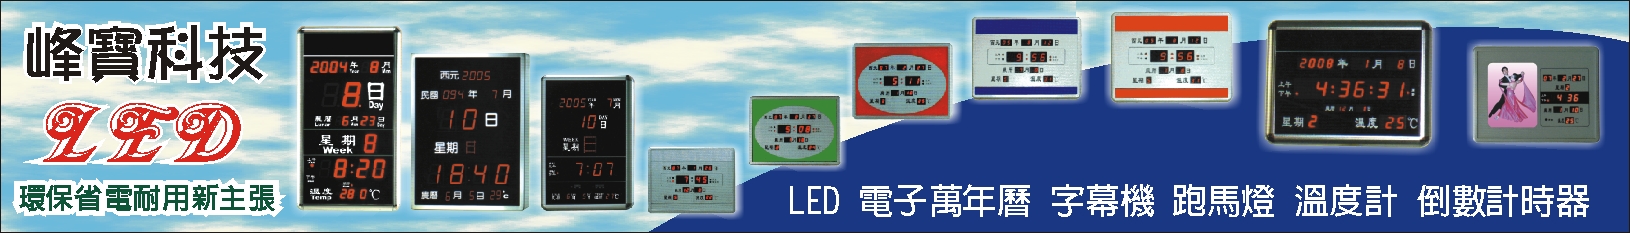 峰寶科技工業有限公司~LED電子萬年曆